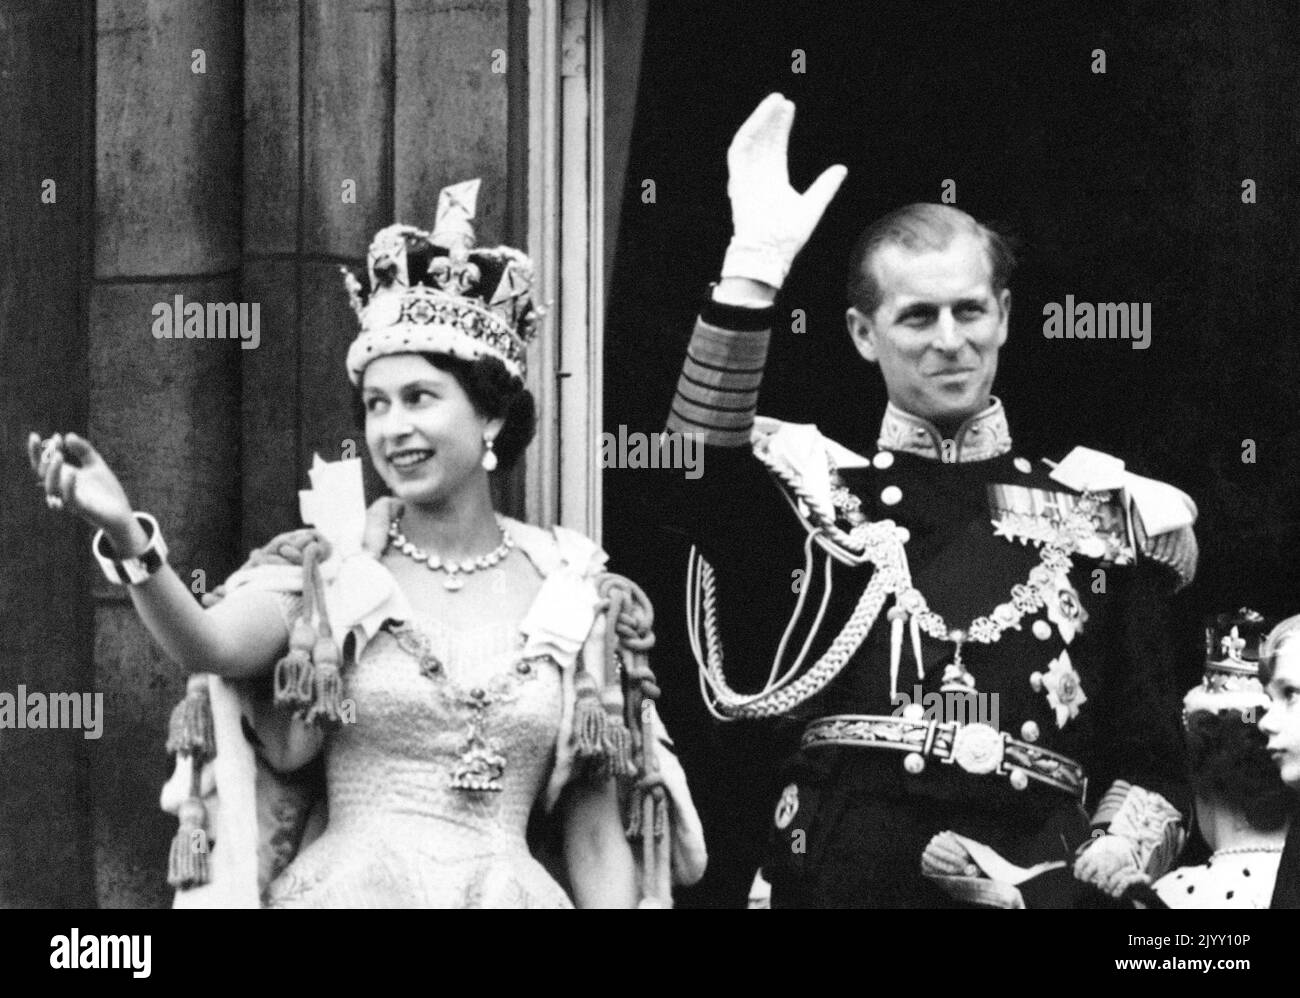 Aktenfoto vom 2/6/1953 von Königin Elizabeth II., die die Imperial State Crown trägt, und dem Herzog von Edinburgh, gekleidet in Uniform des Admirals der Flotte, während sie nach der Krönung vom Balkon zu den schauenden Massen vor den Toren des Buckingham Palace winken. Die Krönung der Königin, reich an religiöser Bedeutung, war ein moralischer Auftrieb für eine Nation, die vom Krieg an Prunk gehungert wurde, und einen Tag lang verbannten Straßenparties die Härte der Rationierung und des Mangels, und selbst grauenhaftes, nicht saisonales Wetter dämpfte den Enthusiasmus nicht. Ausgabedatum: Donnerstag, 8. September 2022. Stockfoto